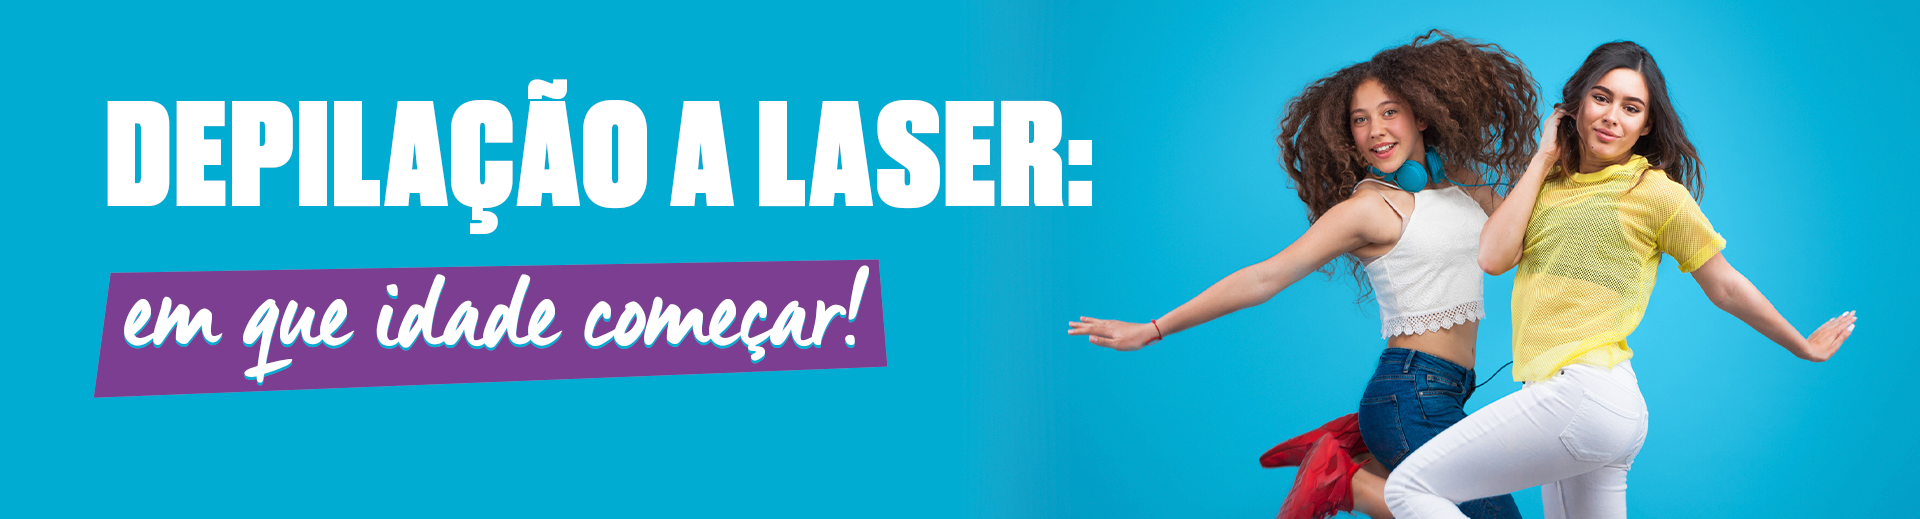 Tire suas dúvidas sobre depilação a laser